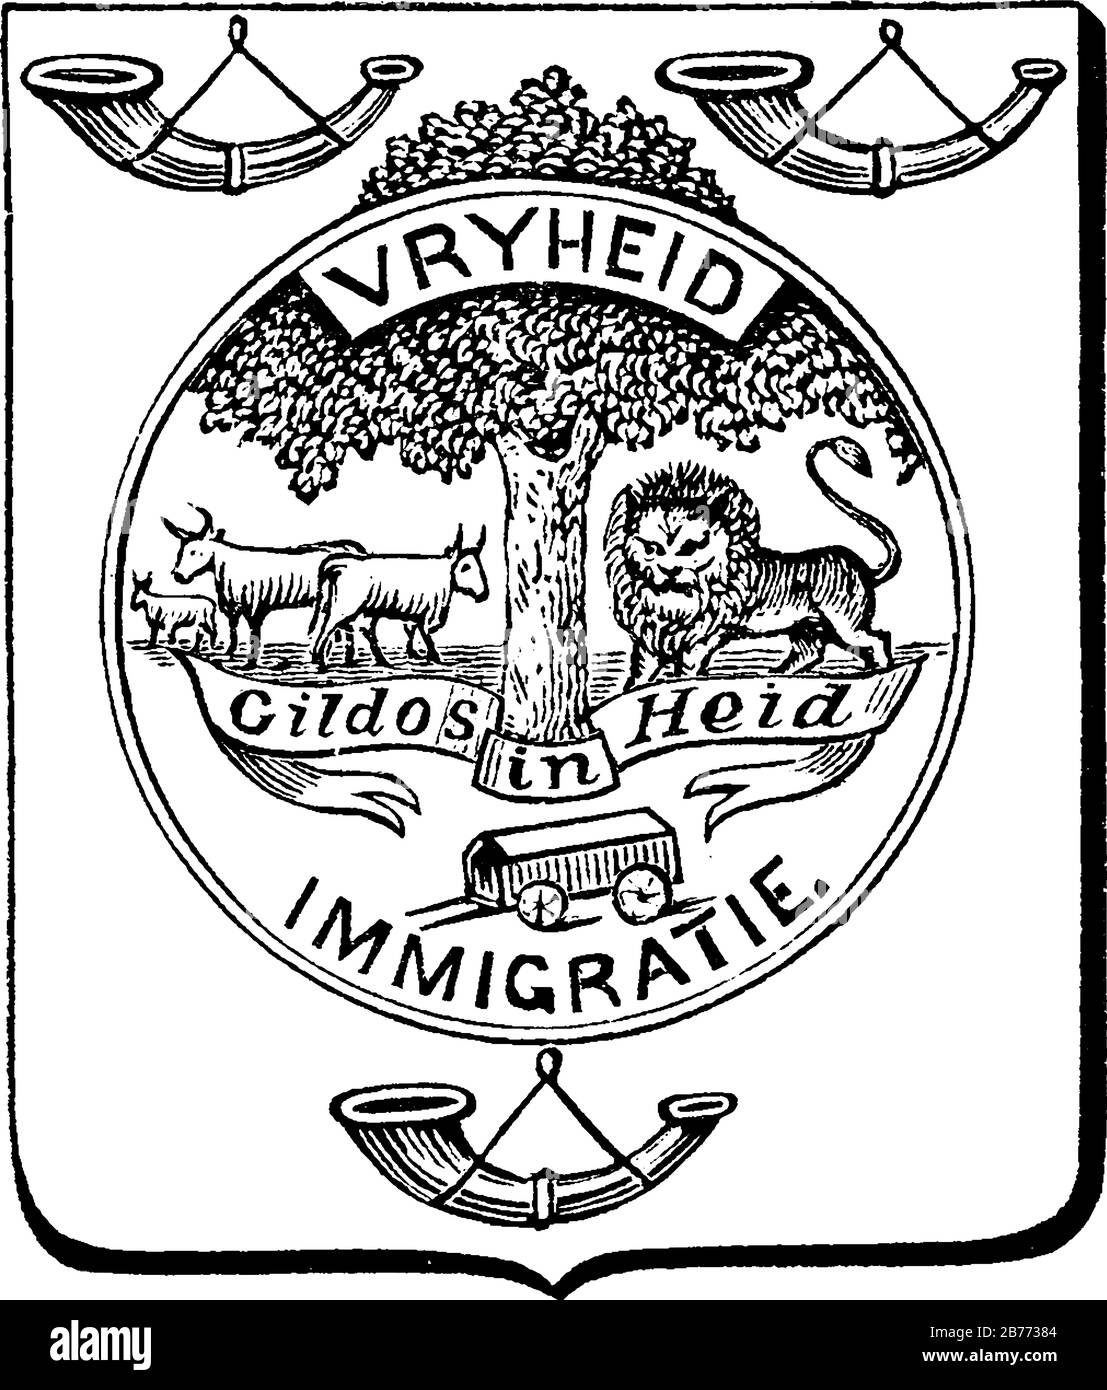 Escudo de armas, República de Sudáfrica, representado con tres cuernos de bugle, árbol, animales y algunos escritos, dibujo de línea vintage o ilustración de grabado Ilustración del Vector